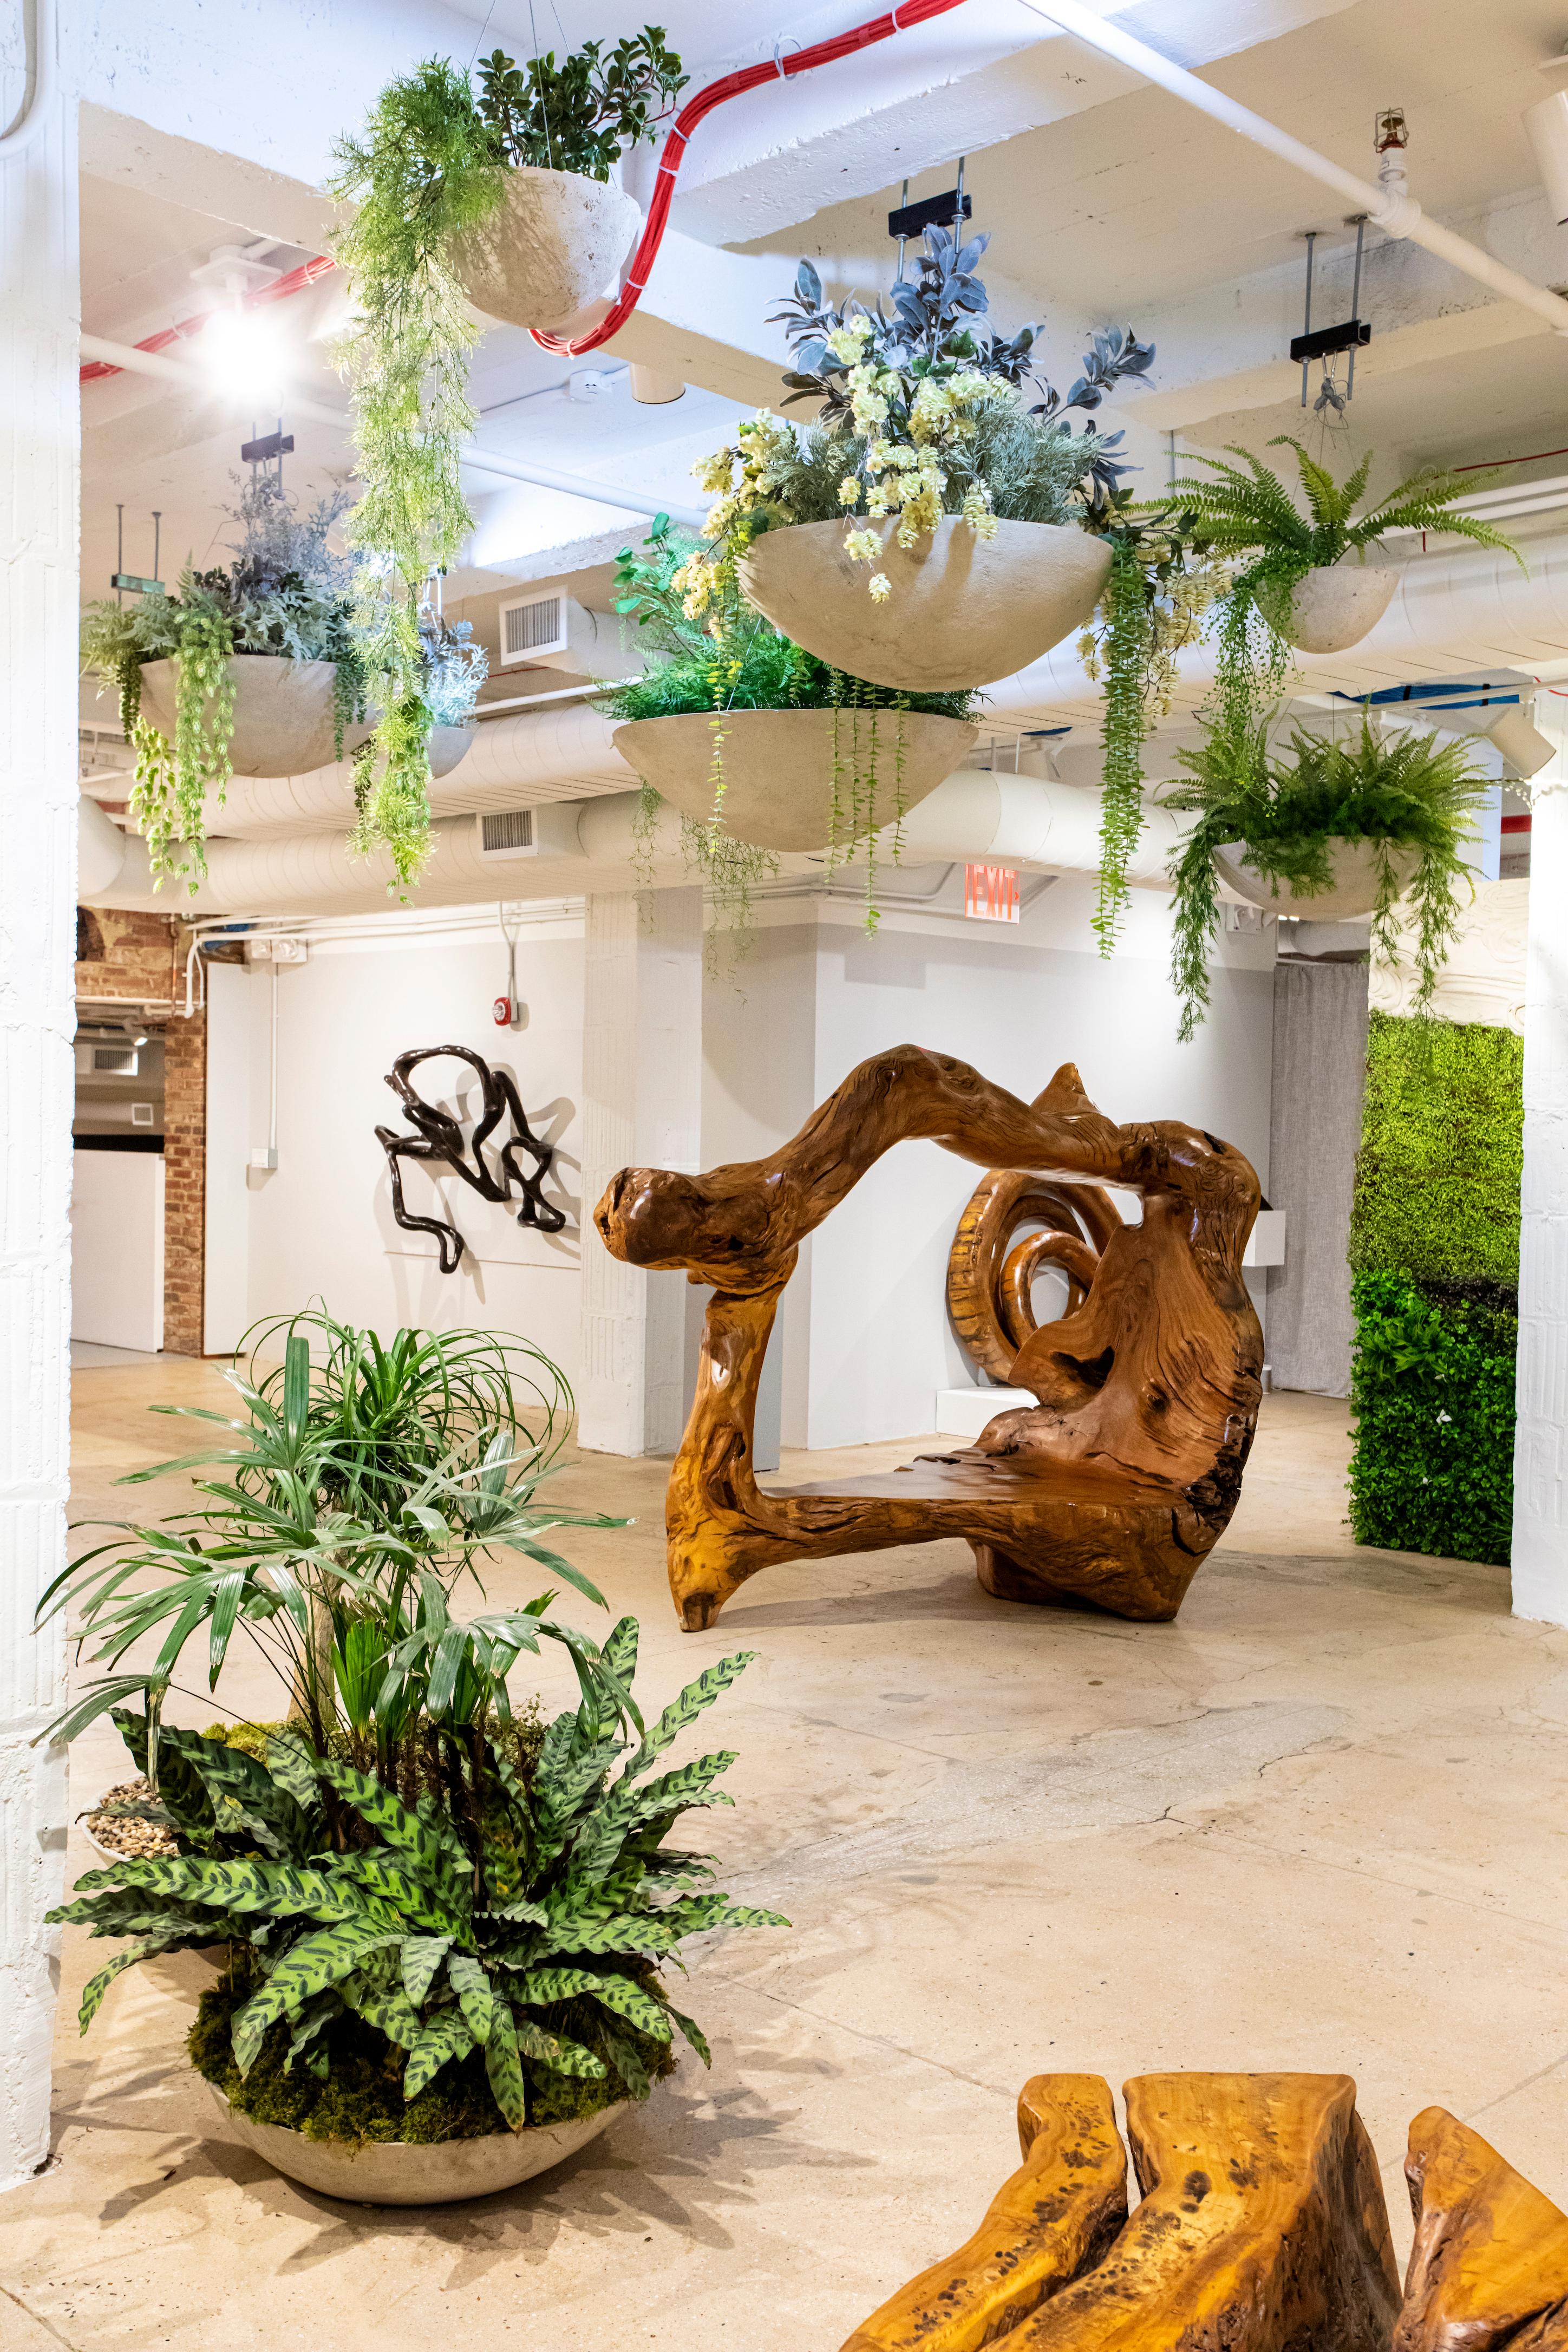 Opiary ist ein biophiles Design- und Produktionsstudio mit Sitz in Brooklyn. Wir integrieren die Natur in jeden unserer Entwürfe, indem wir lebendes Grün und organische Formen in maßgefertigte Möbel, Pflanzgefäße und Skulpturen integrieren. Durch